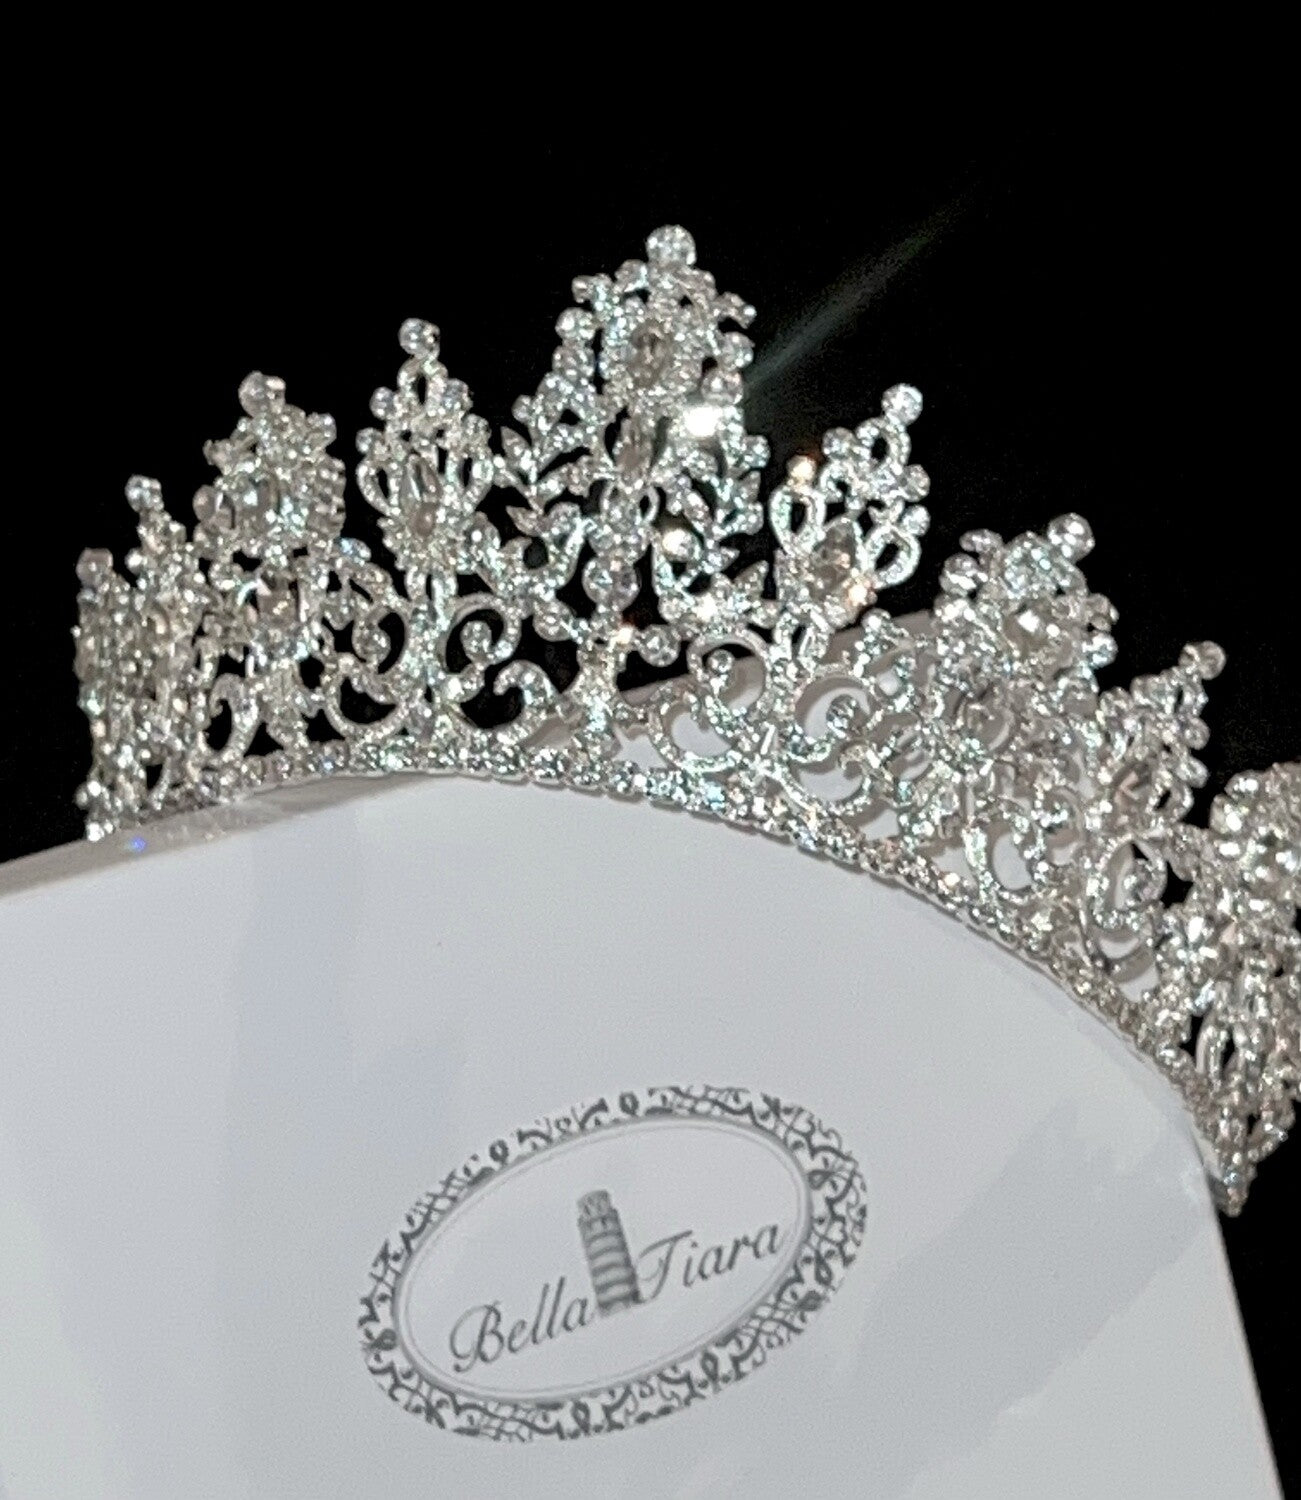 Queen Marianne - Swarovski Crystal wedding Crown Tiara